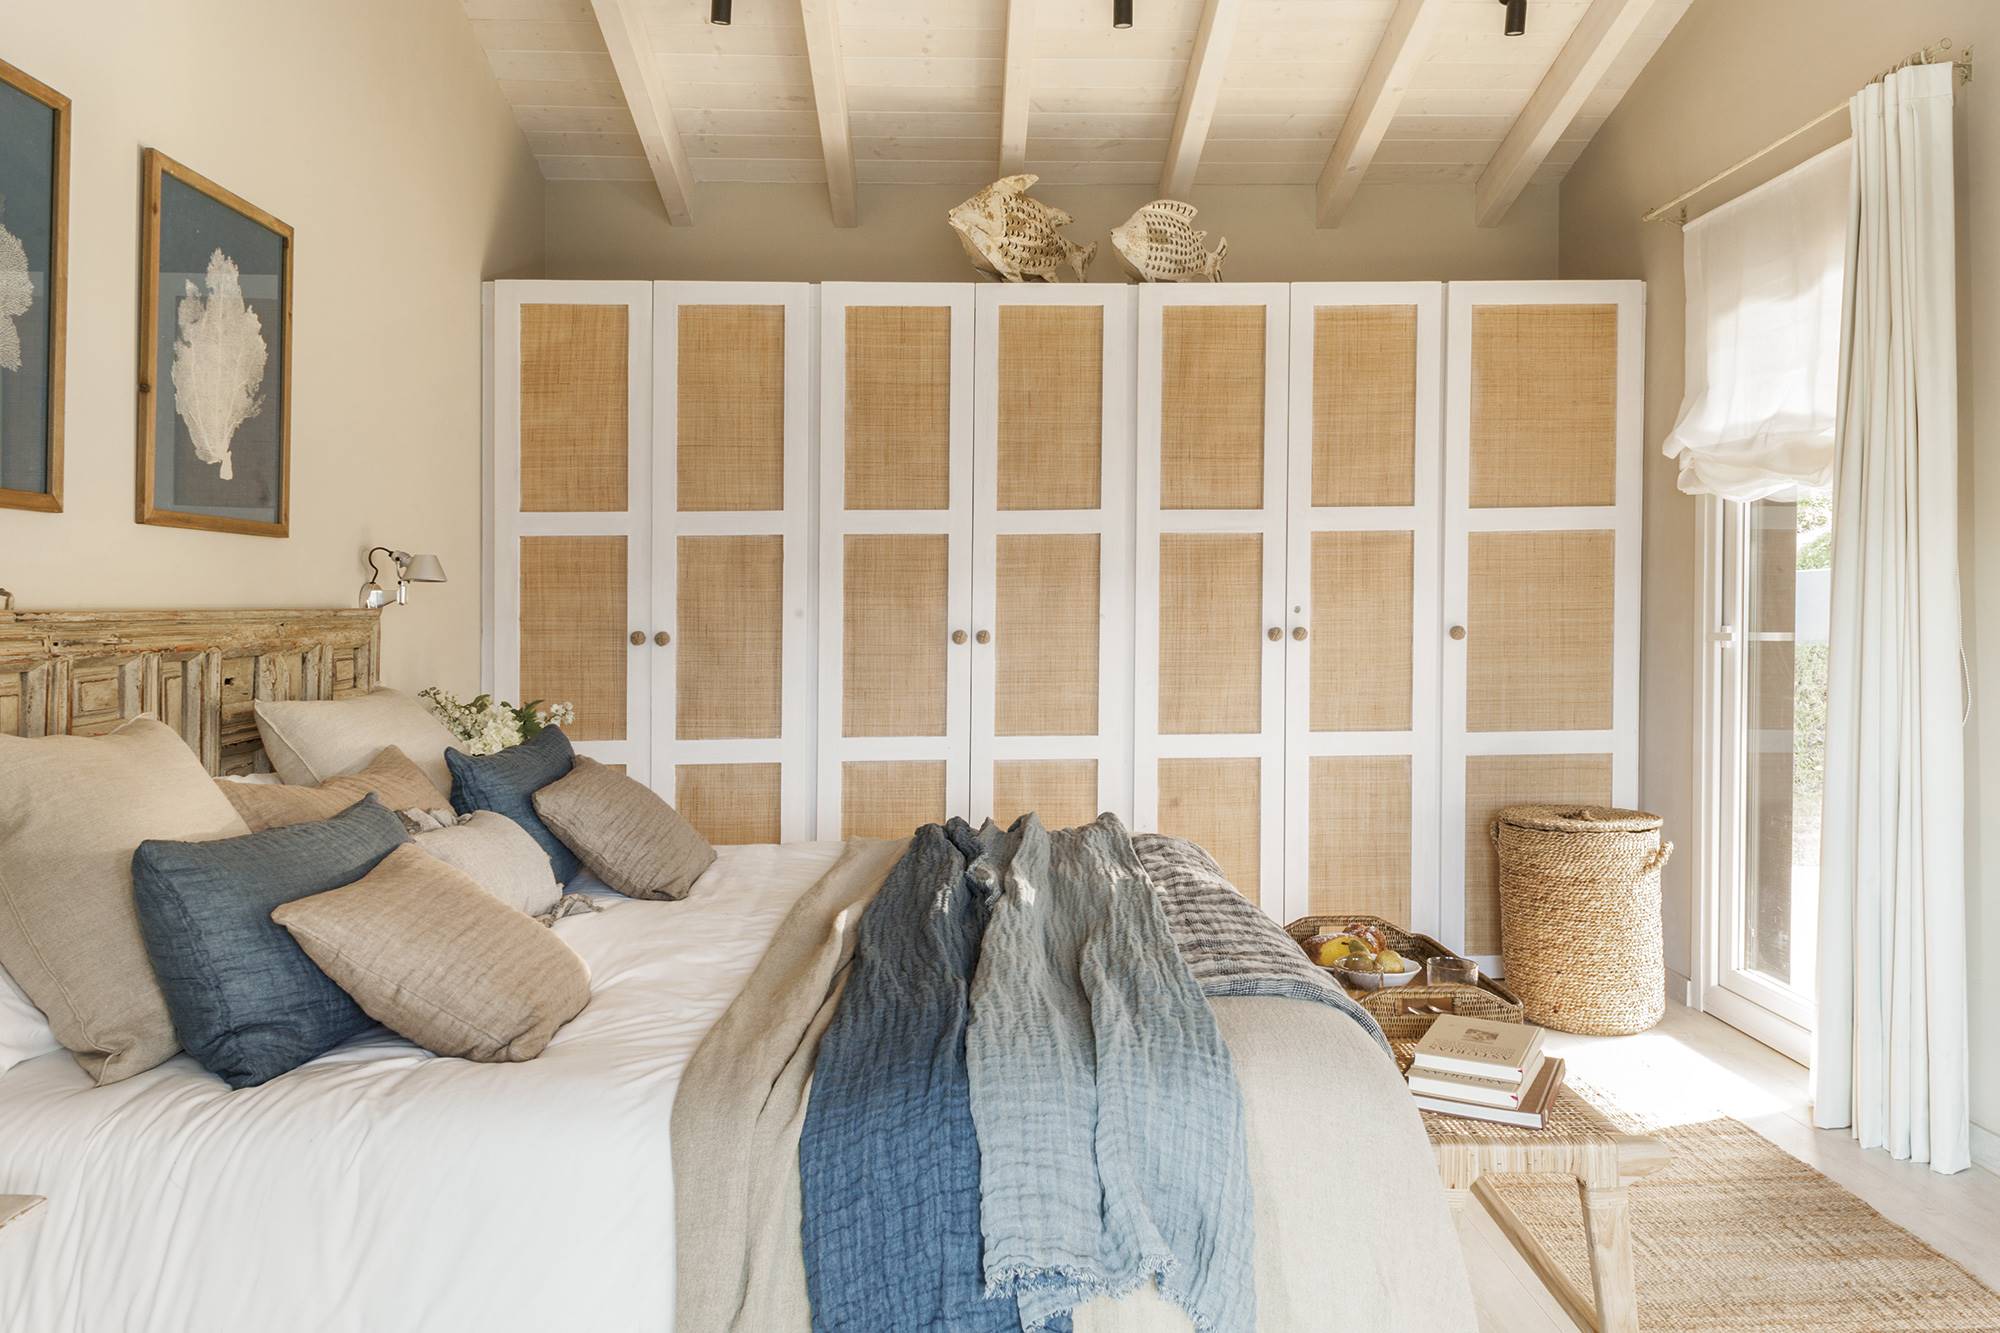 Dormitorio de estilo romántico en una cabaña de montaña, con armario de madera blanca y fibra natural.